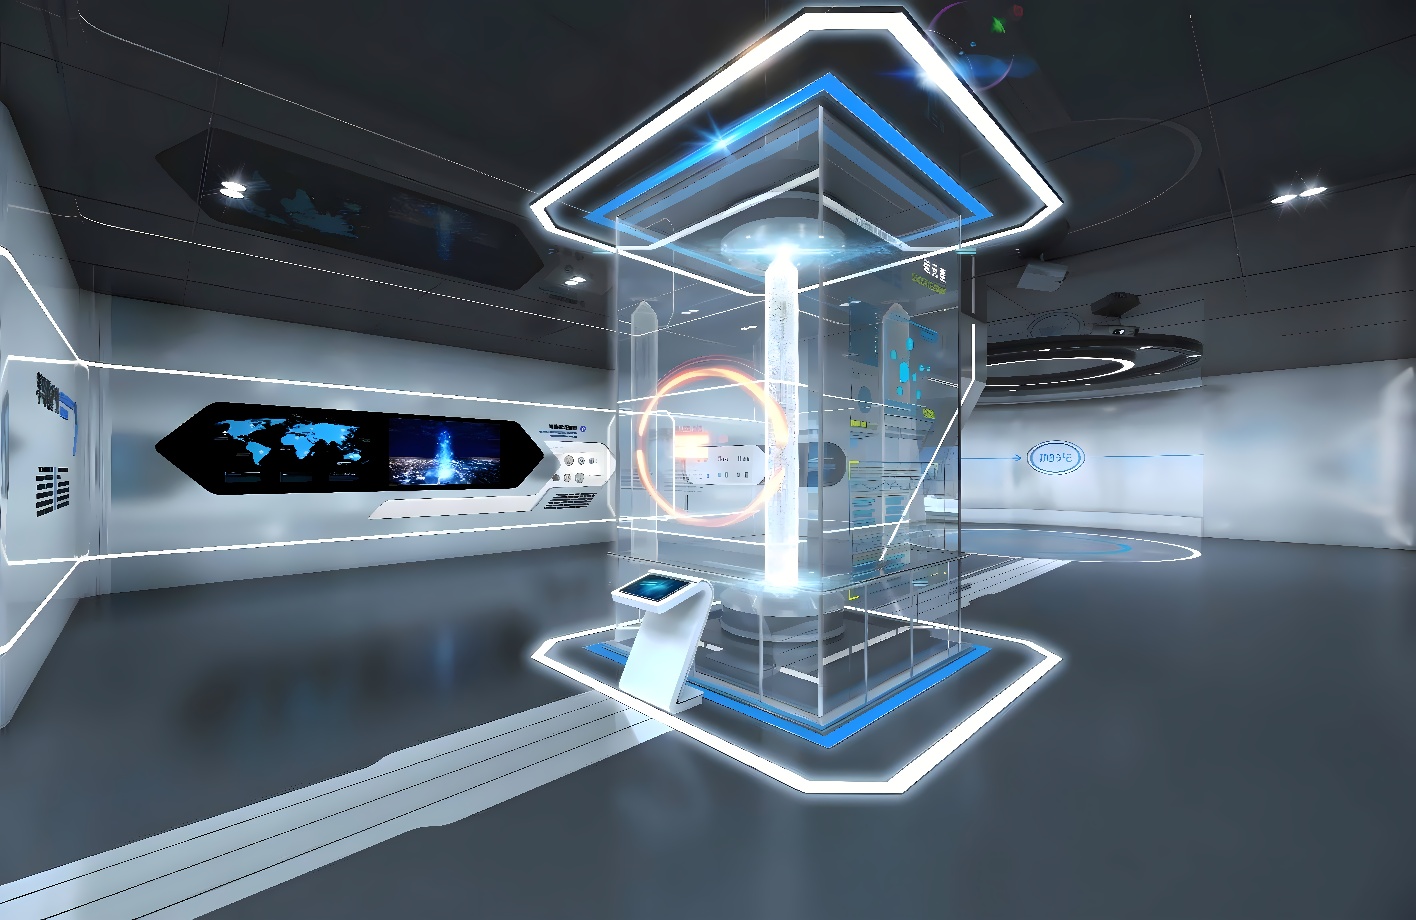 这是一张展现现代科技感的虚拟现实室内设计图，包含多个显示屏、光影效果和未来风格的装饰。